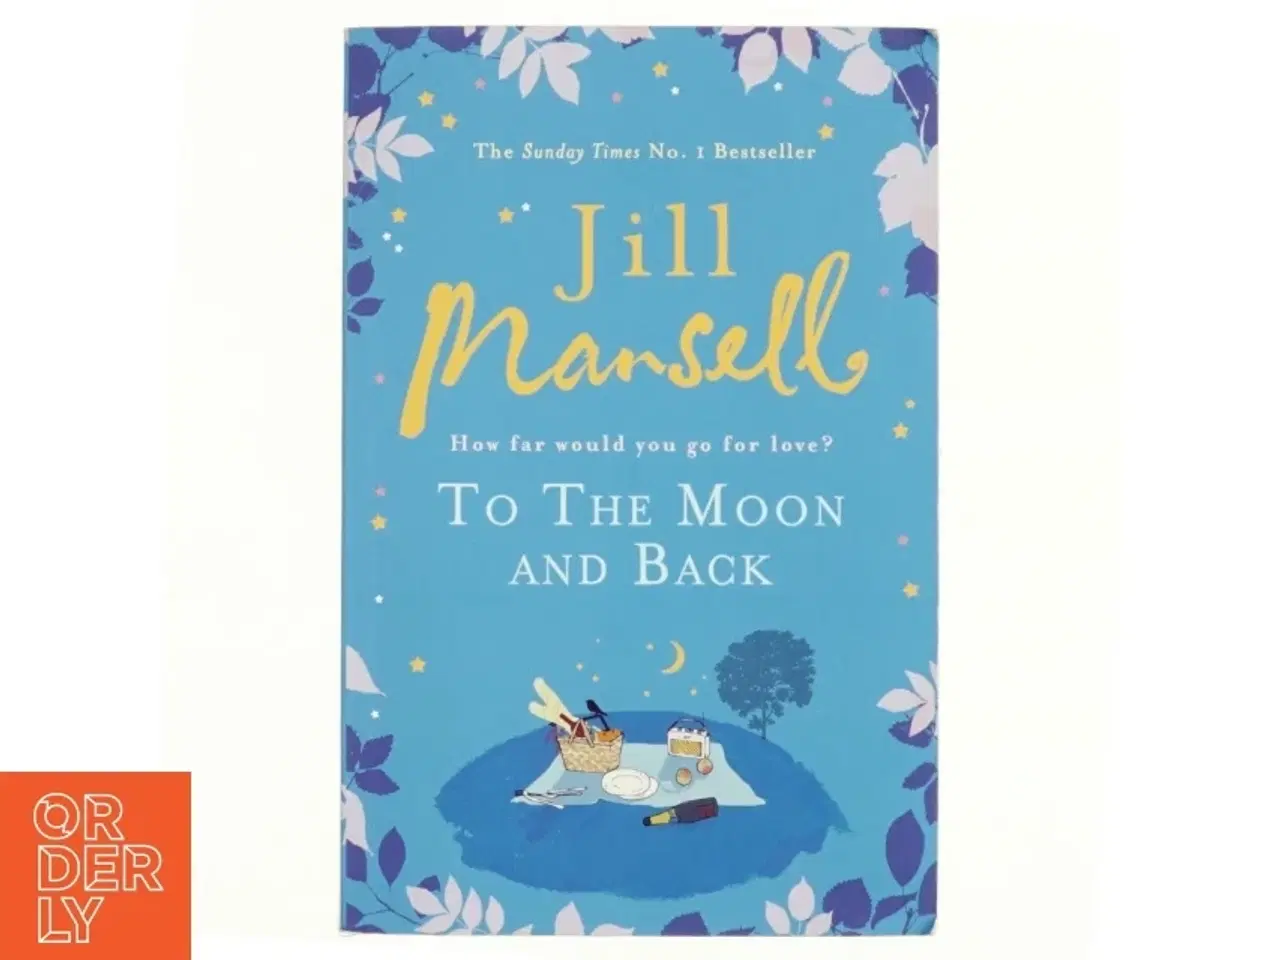 Billede 1 - To the moon and back af Jill Mansell (Bog)